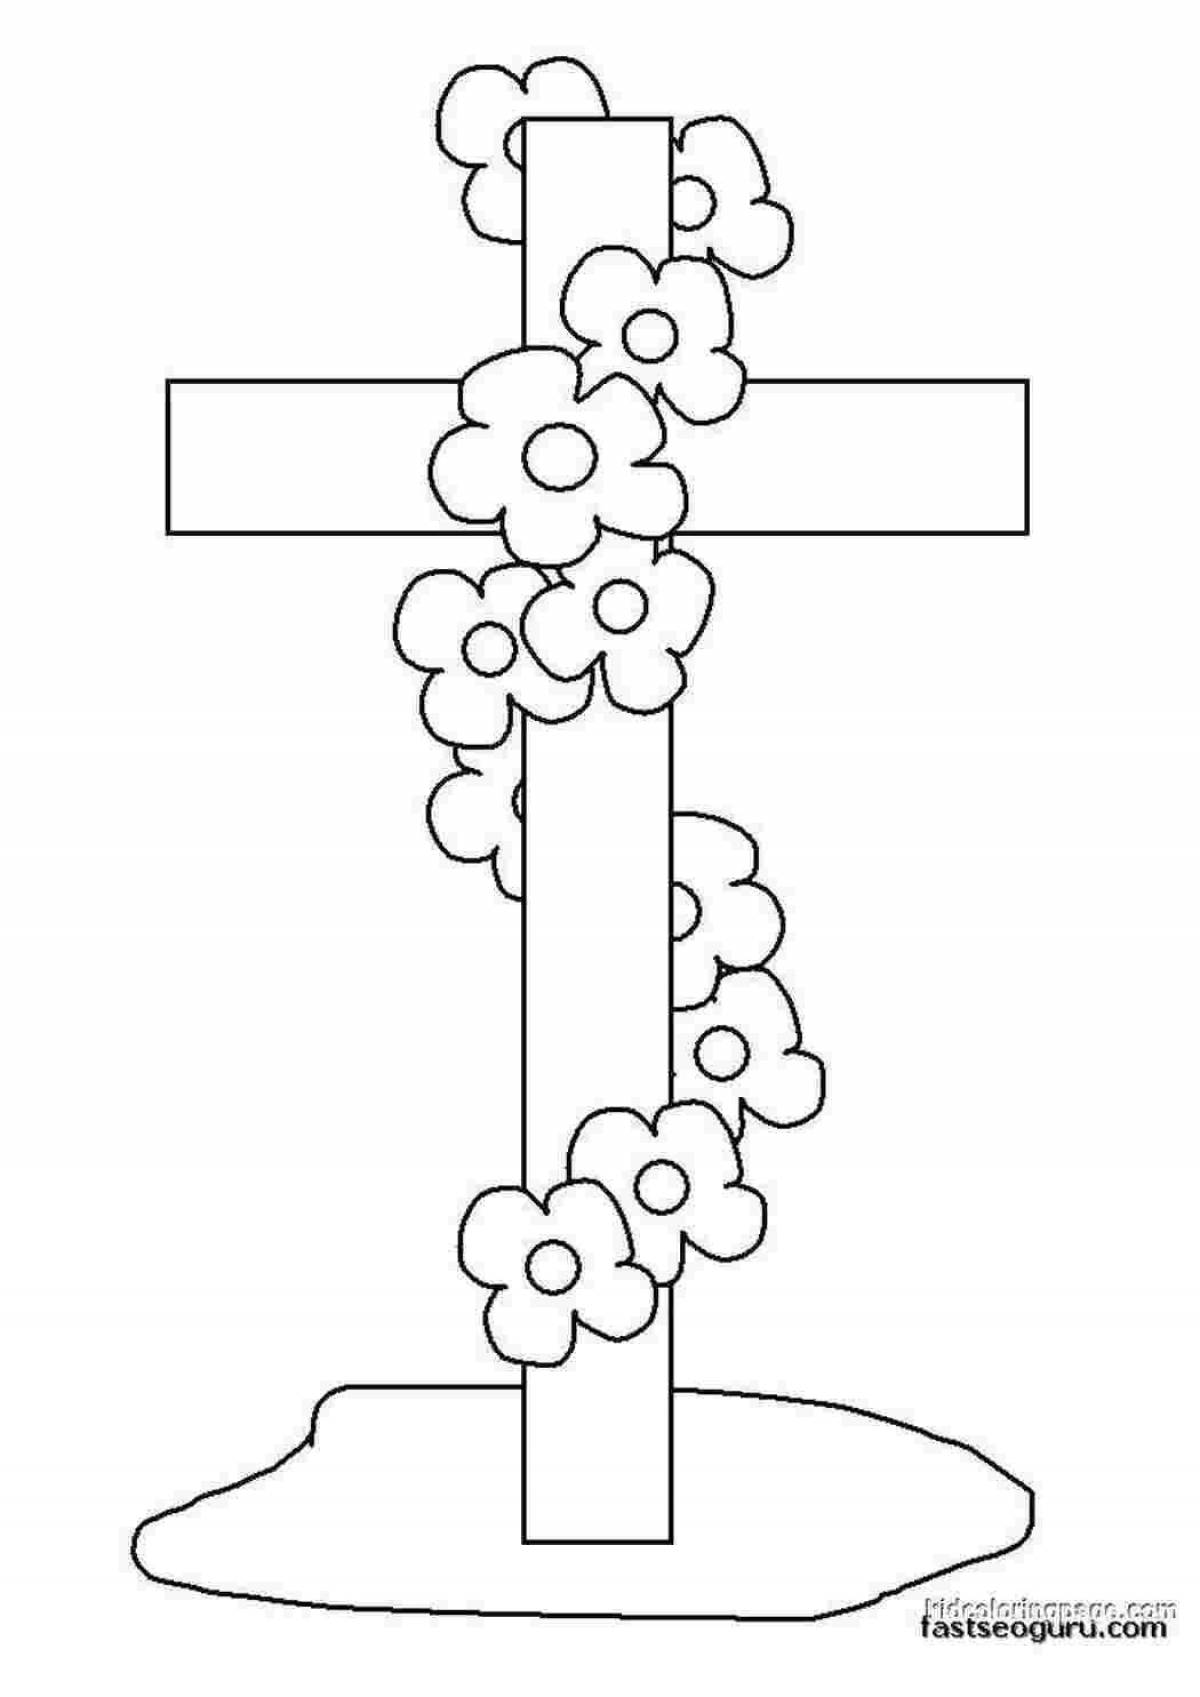 Крест раскраска для детей воскресной школы